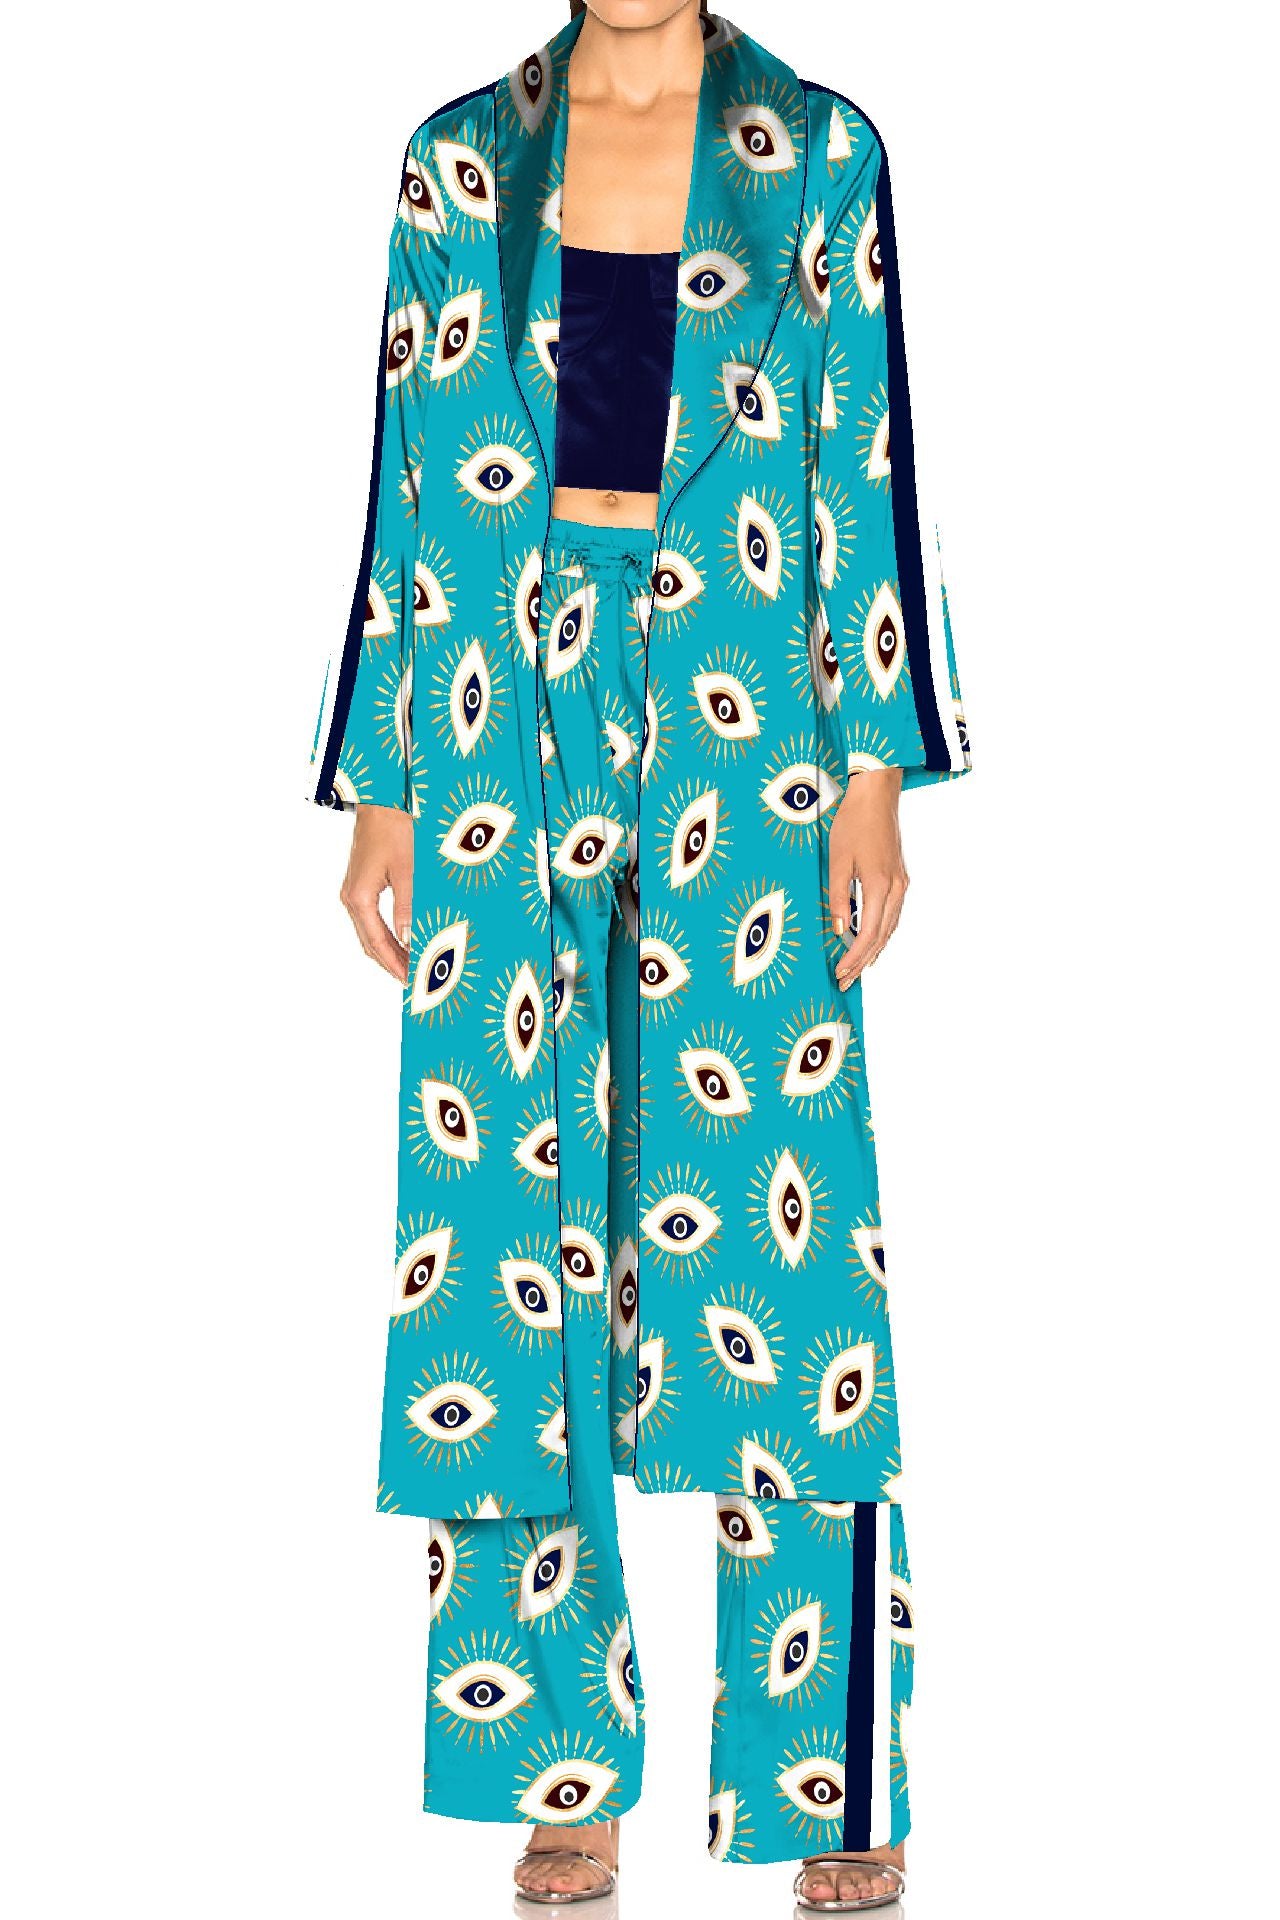 "Kyle X Shahida" "pajama robe women" "womens lounge robes" "silk pajamas and robe"